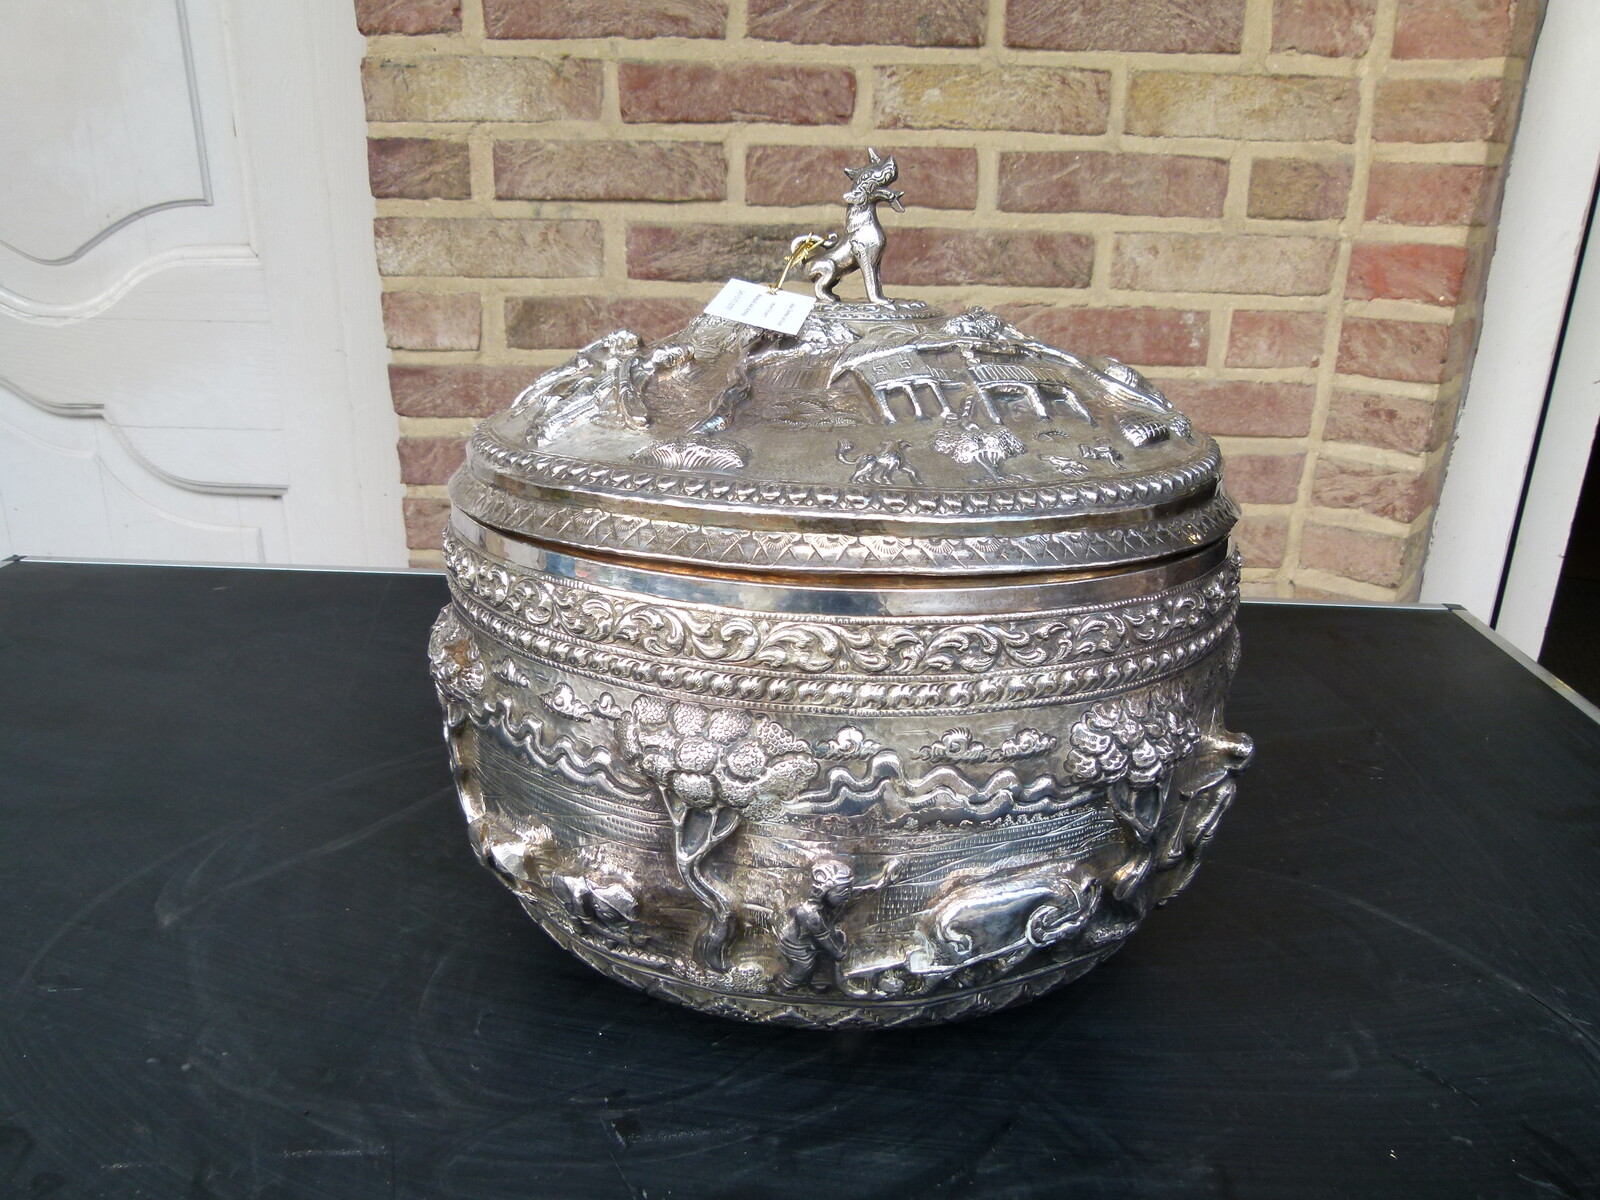 Asiatique Huge bowl 1785gr silver marked Habi